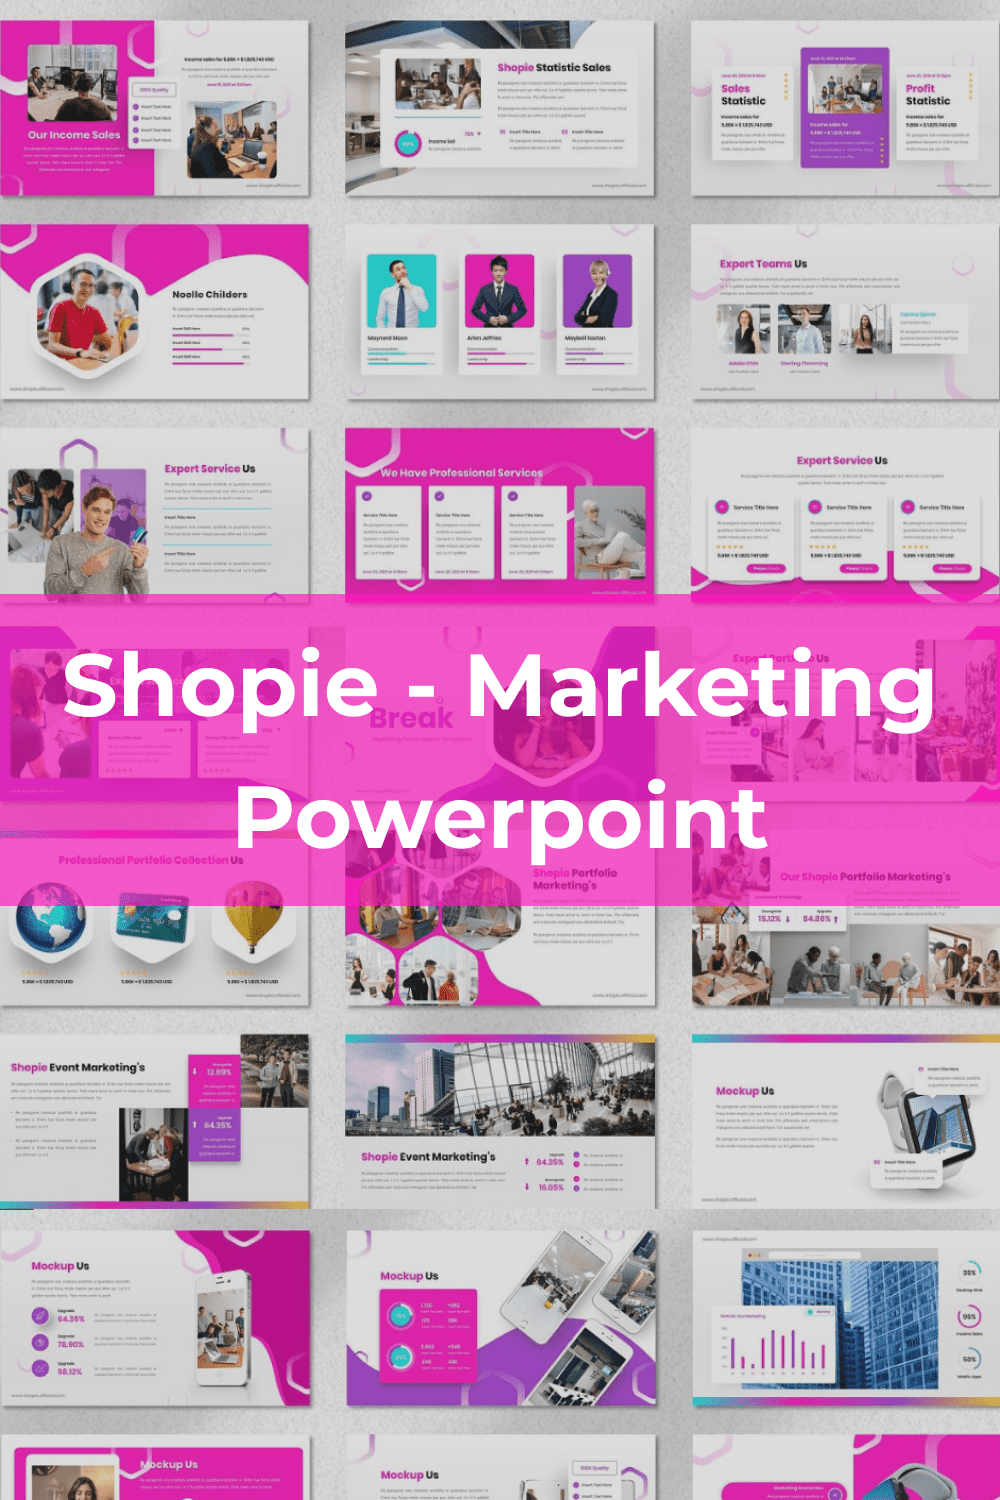 Shopie - Marketing Powerpoint Pinterest.